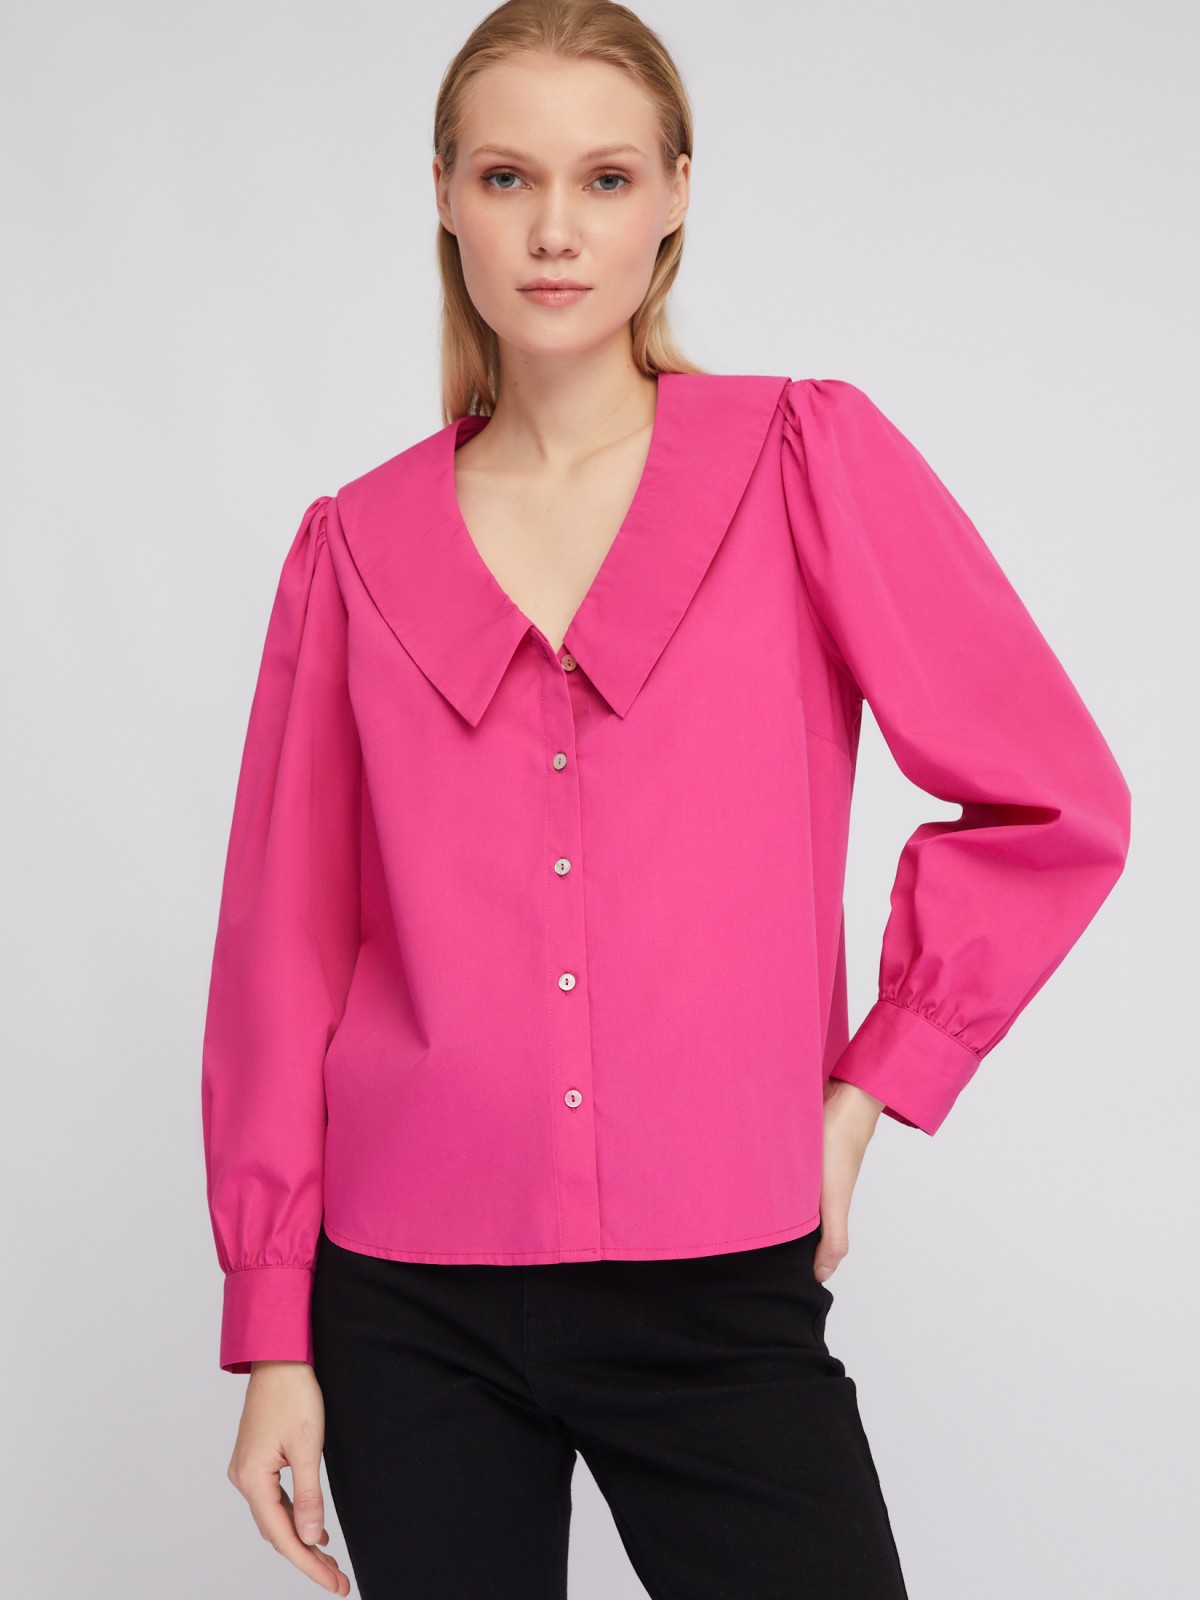 Блузка-рубашка с акцентным воротником и объёмными рукавами zolla 02411117Y593, цвет фуксия, размер XS - фото 1